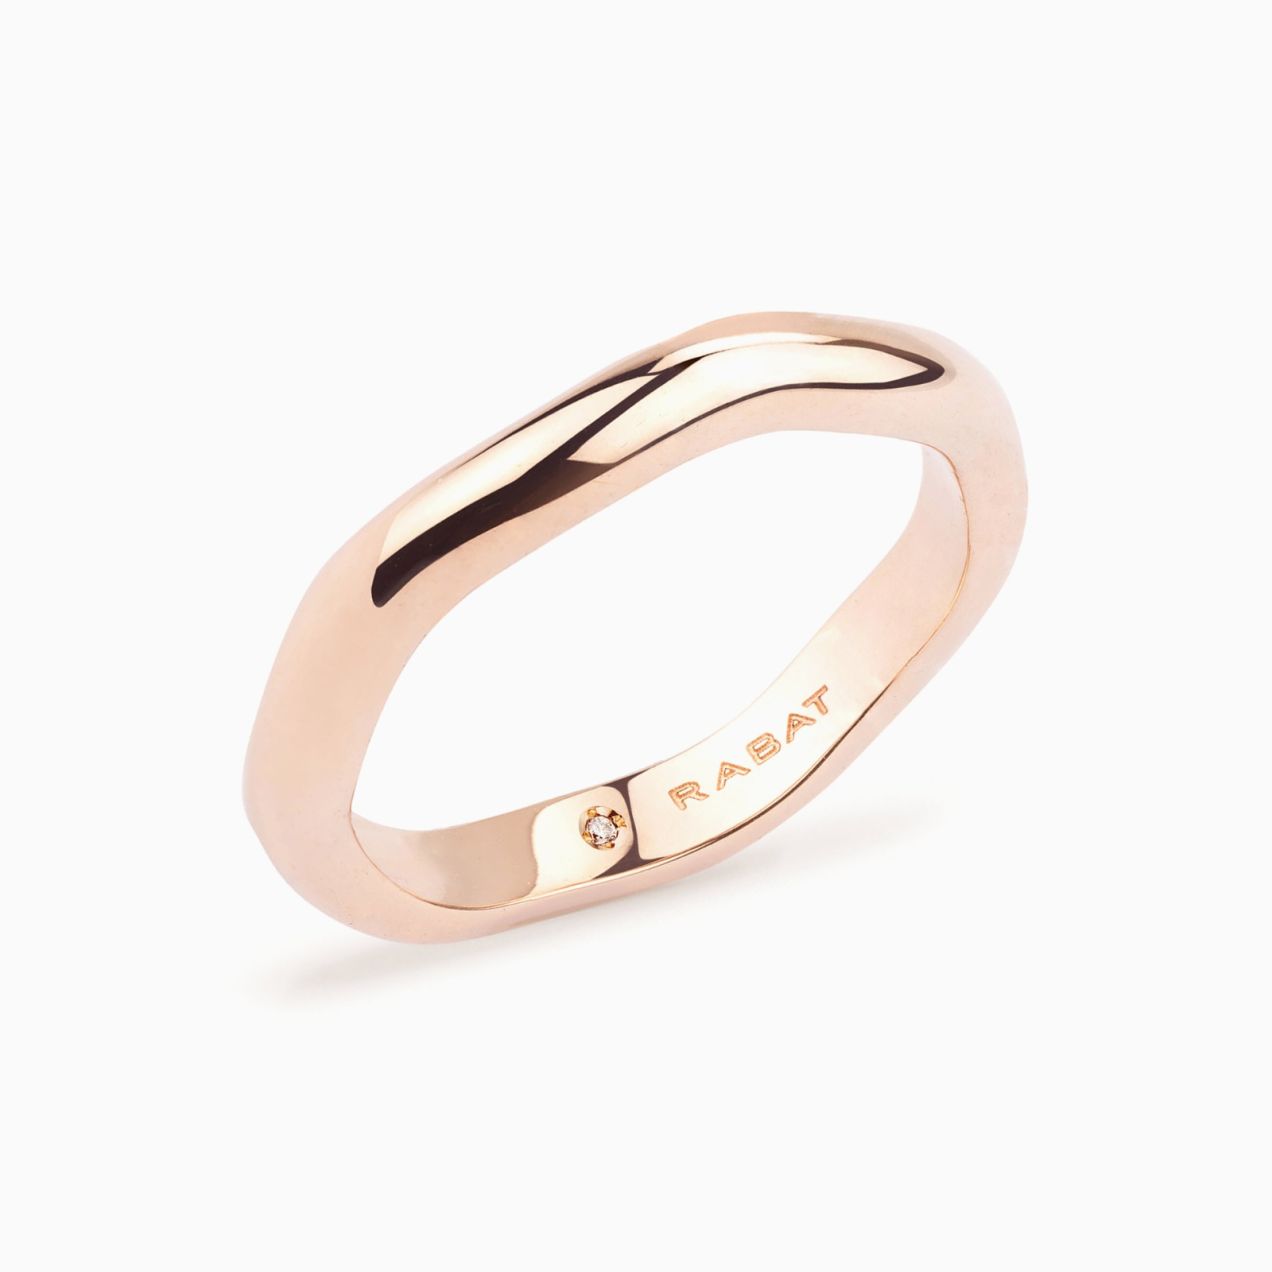 Pink gold waves wedding ring